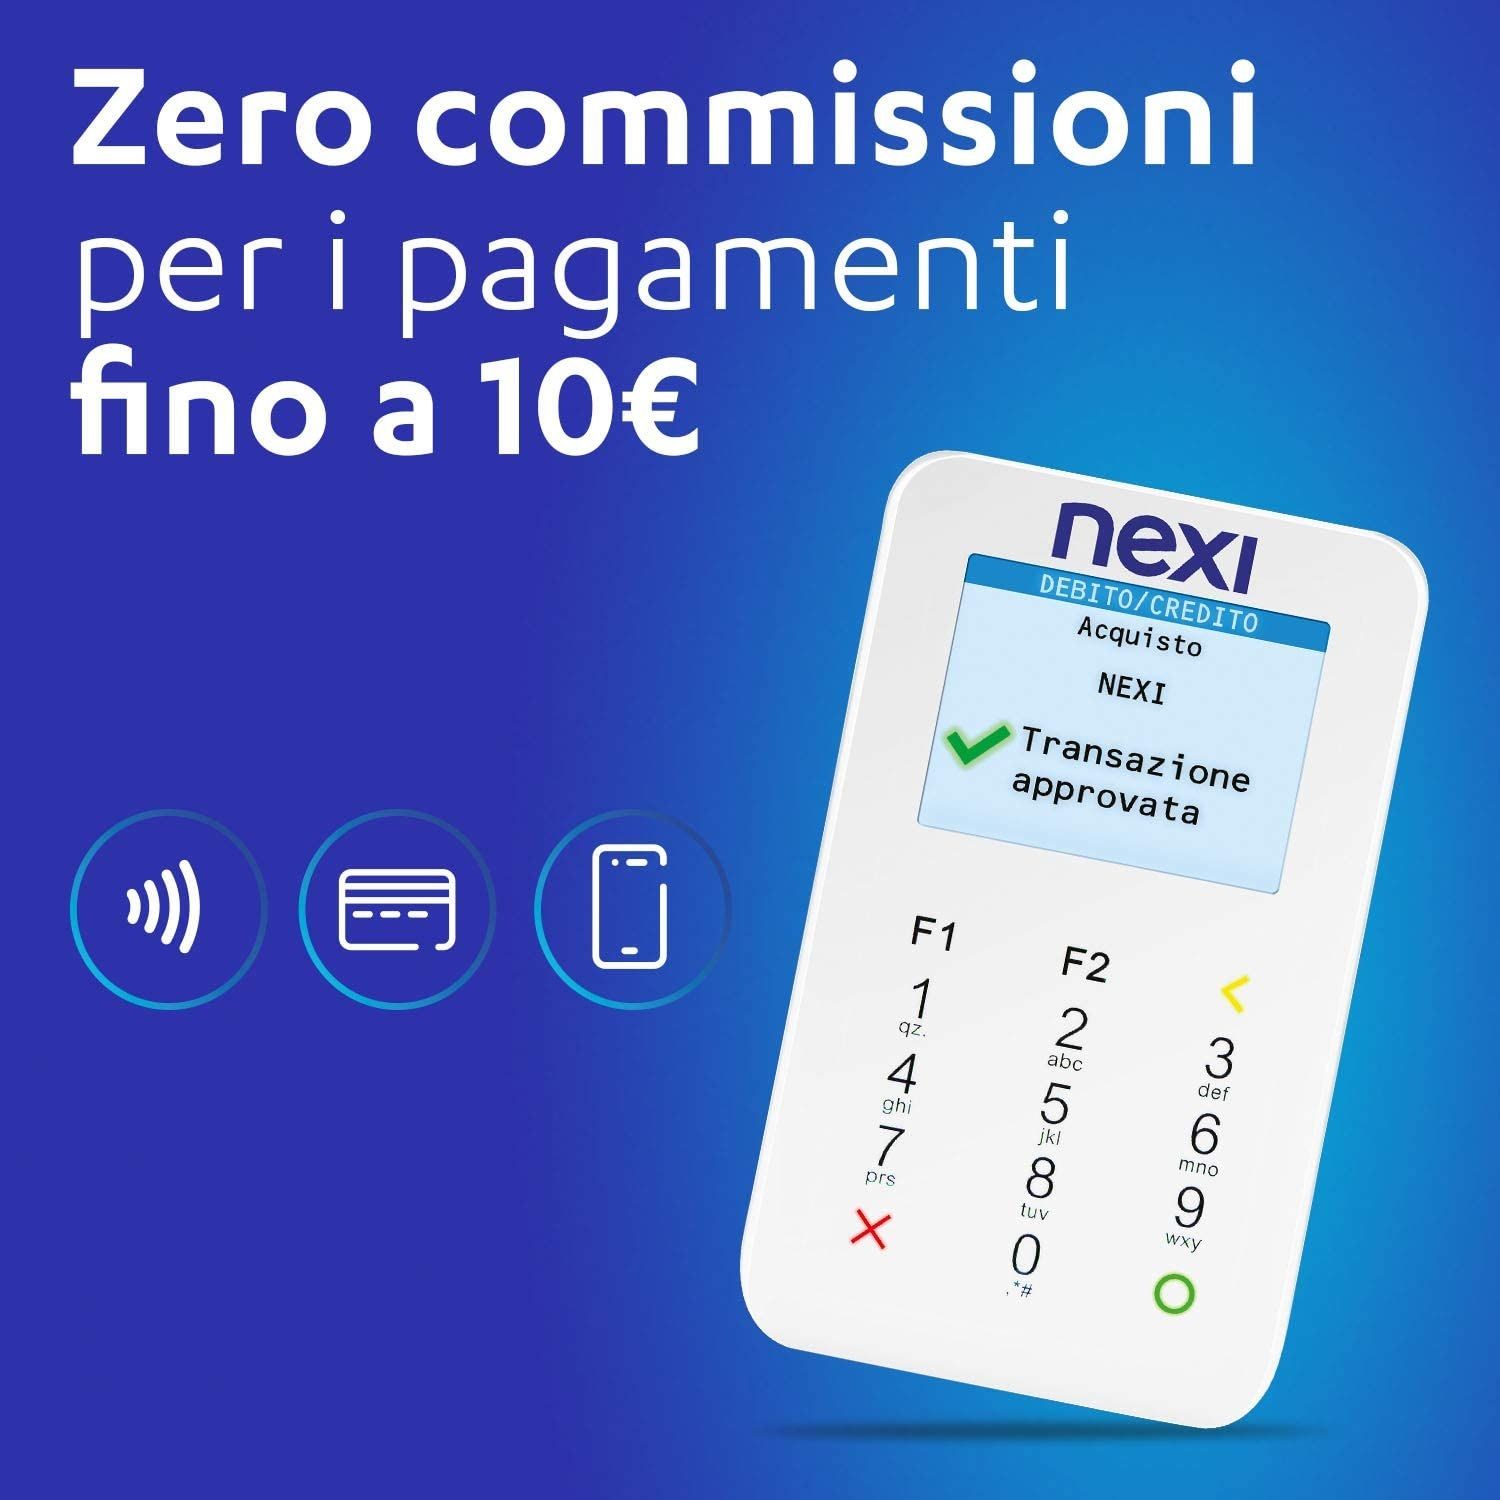 Nexi Mobile Pos Portatile Contactless Lettore Elettronico Portatile per  Pagare